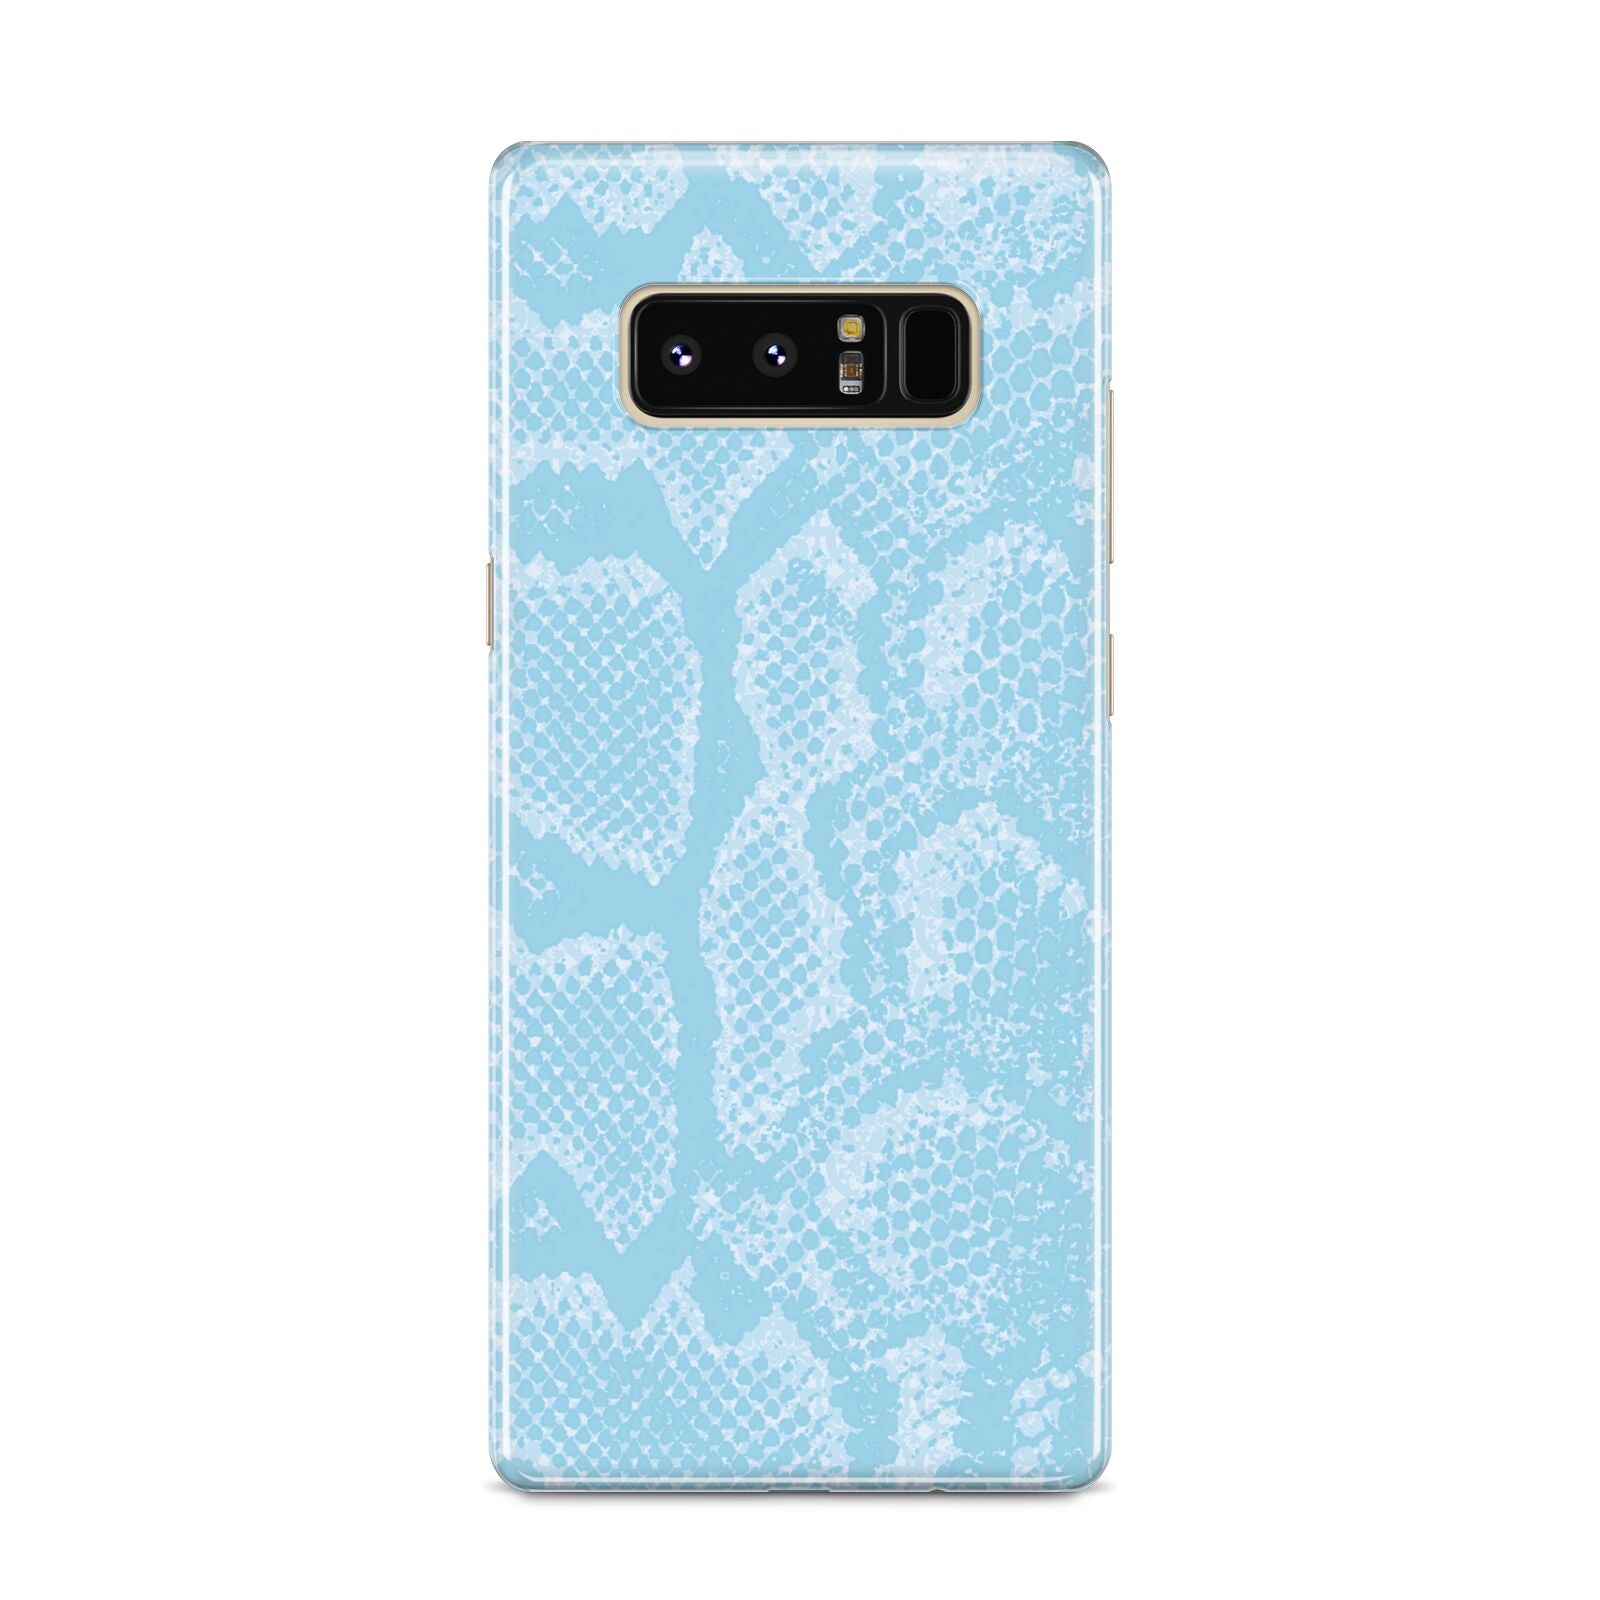 Blue Snakeskin Samsung Galaxy S8 Case